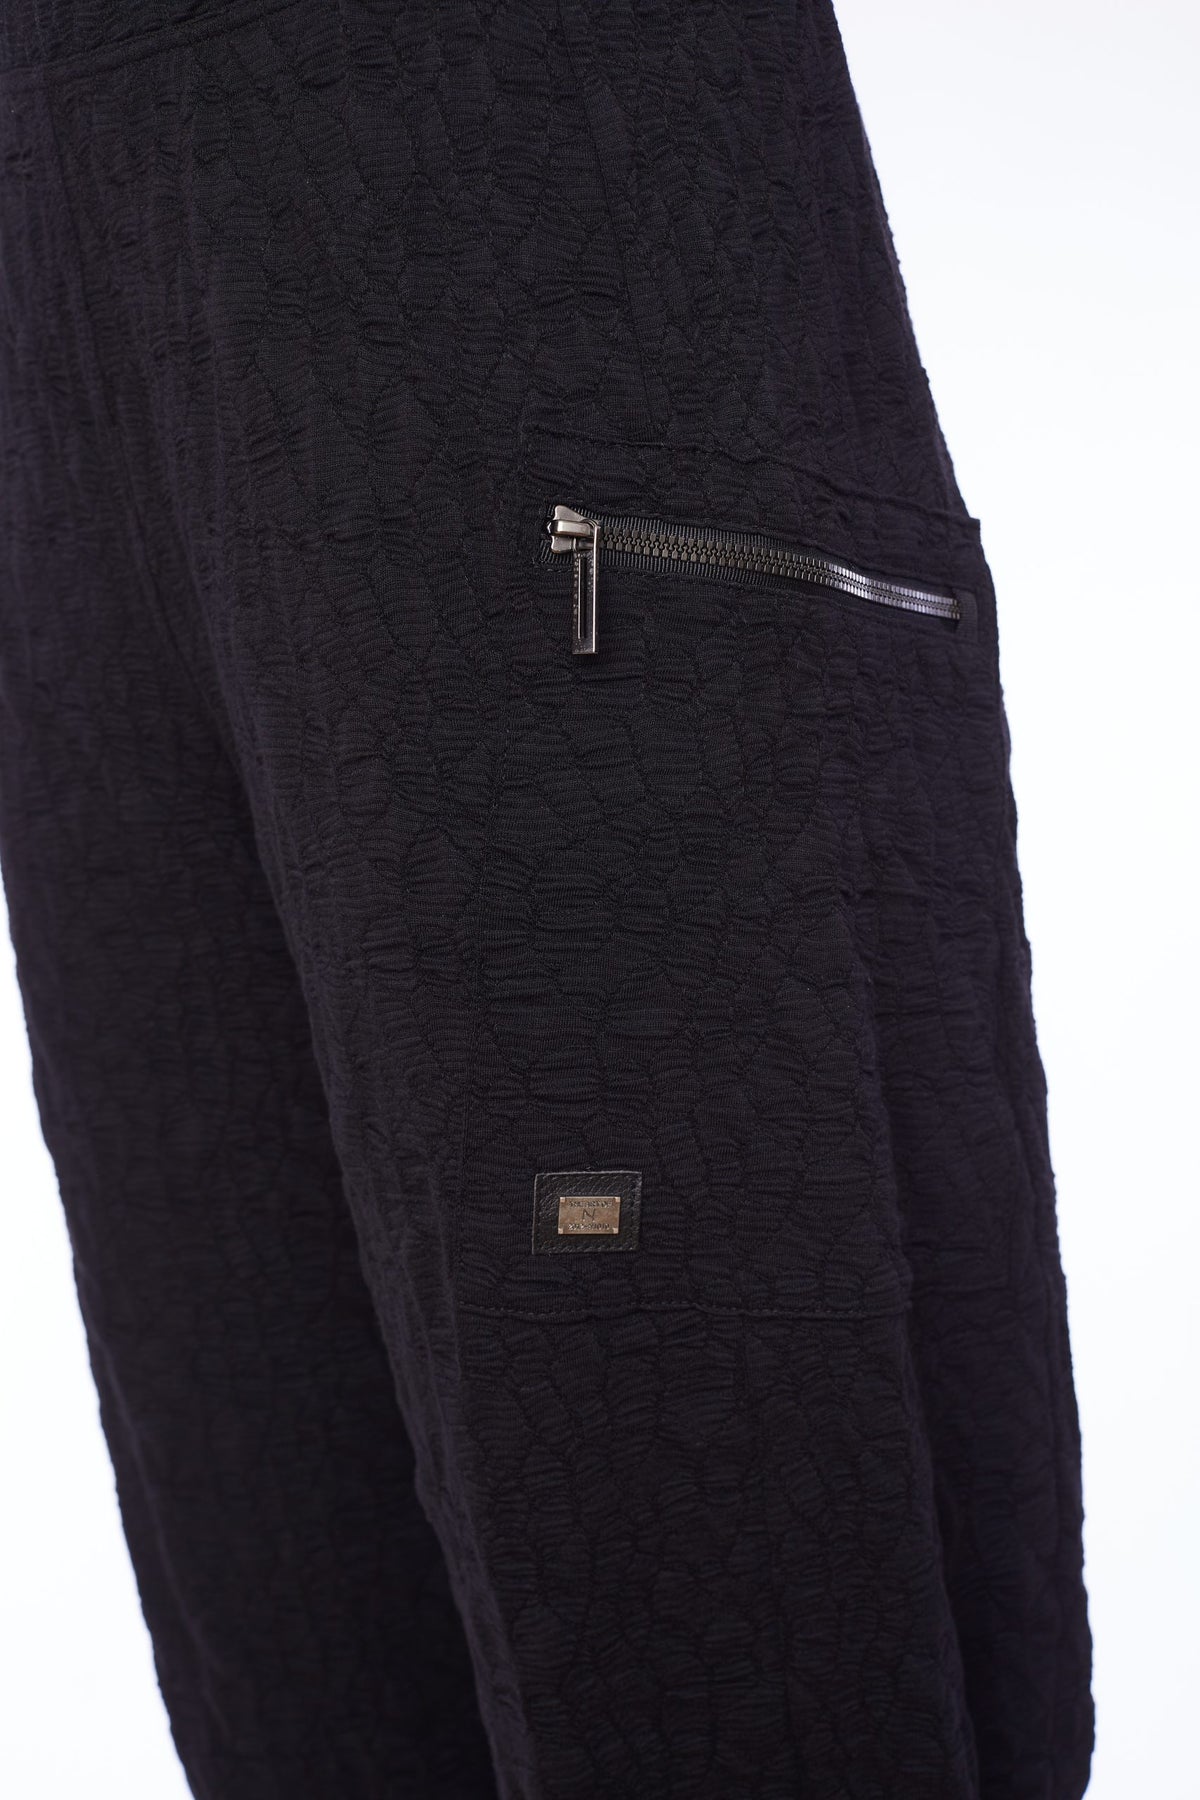 NAS24253 NAYA Pantalon/poignet texturé avec poche zippée